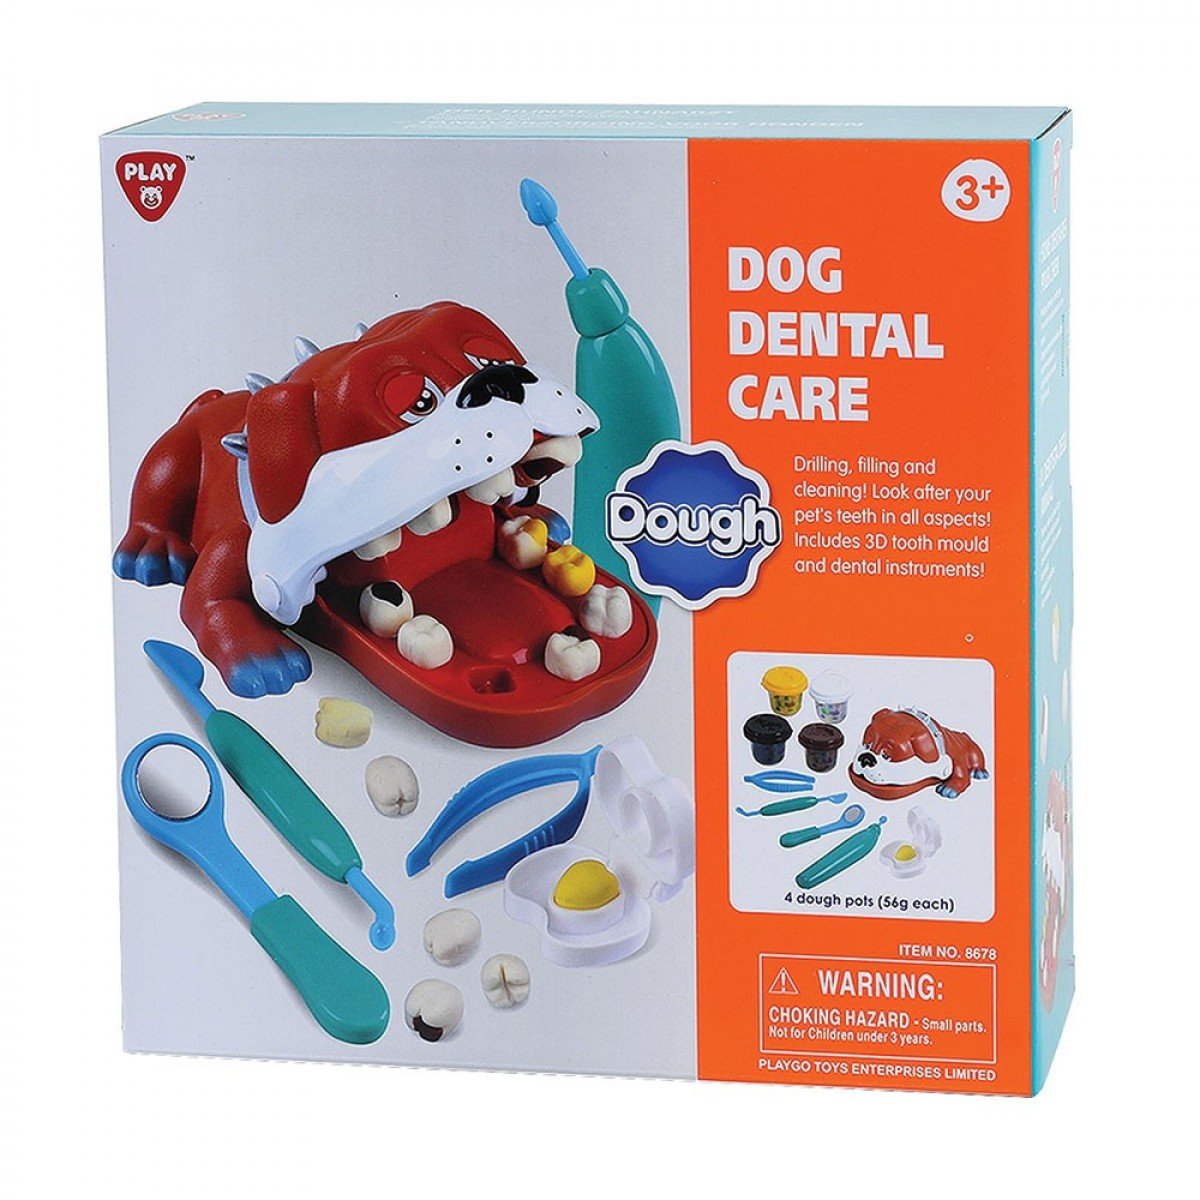 โดว์ฑันตแพทย์โฮ่ง Dog Dental Care (รุ่น 8678) ยี่ห้อ PLAYGO